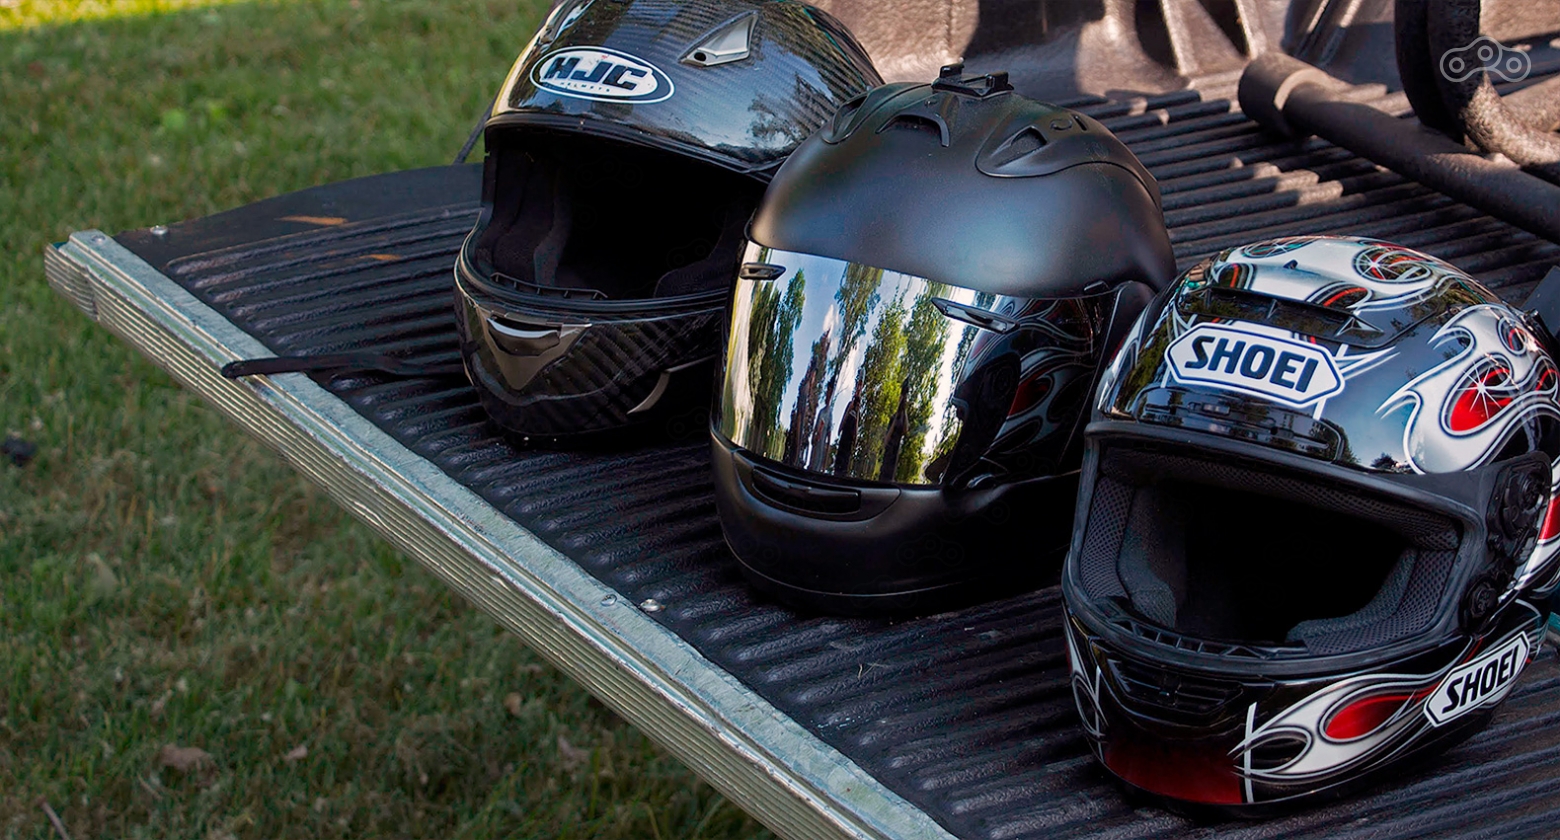 Разница в весе термопластиковых и композитных шлемов может достигать 200-300 грамм Как выбрать мотошлем инструкция Омоймот. Фото – NoxImus